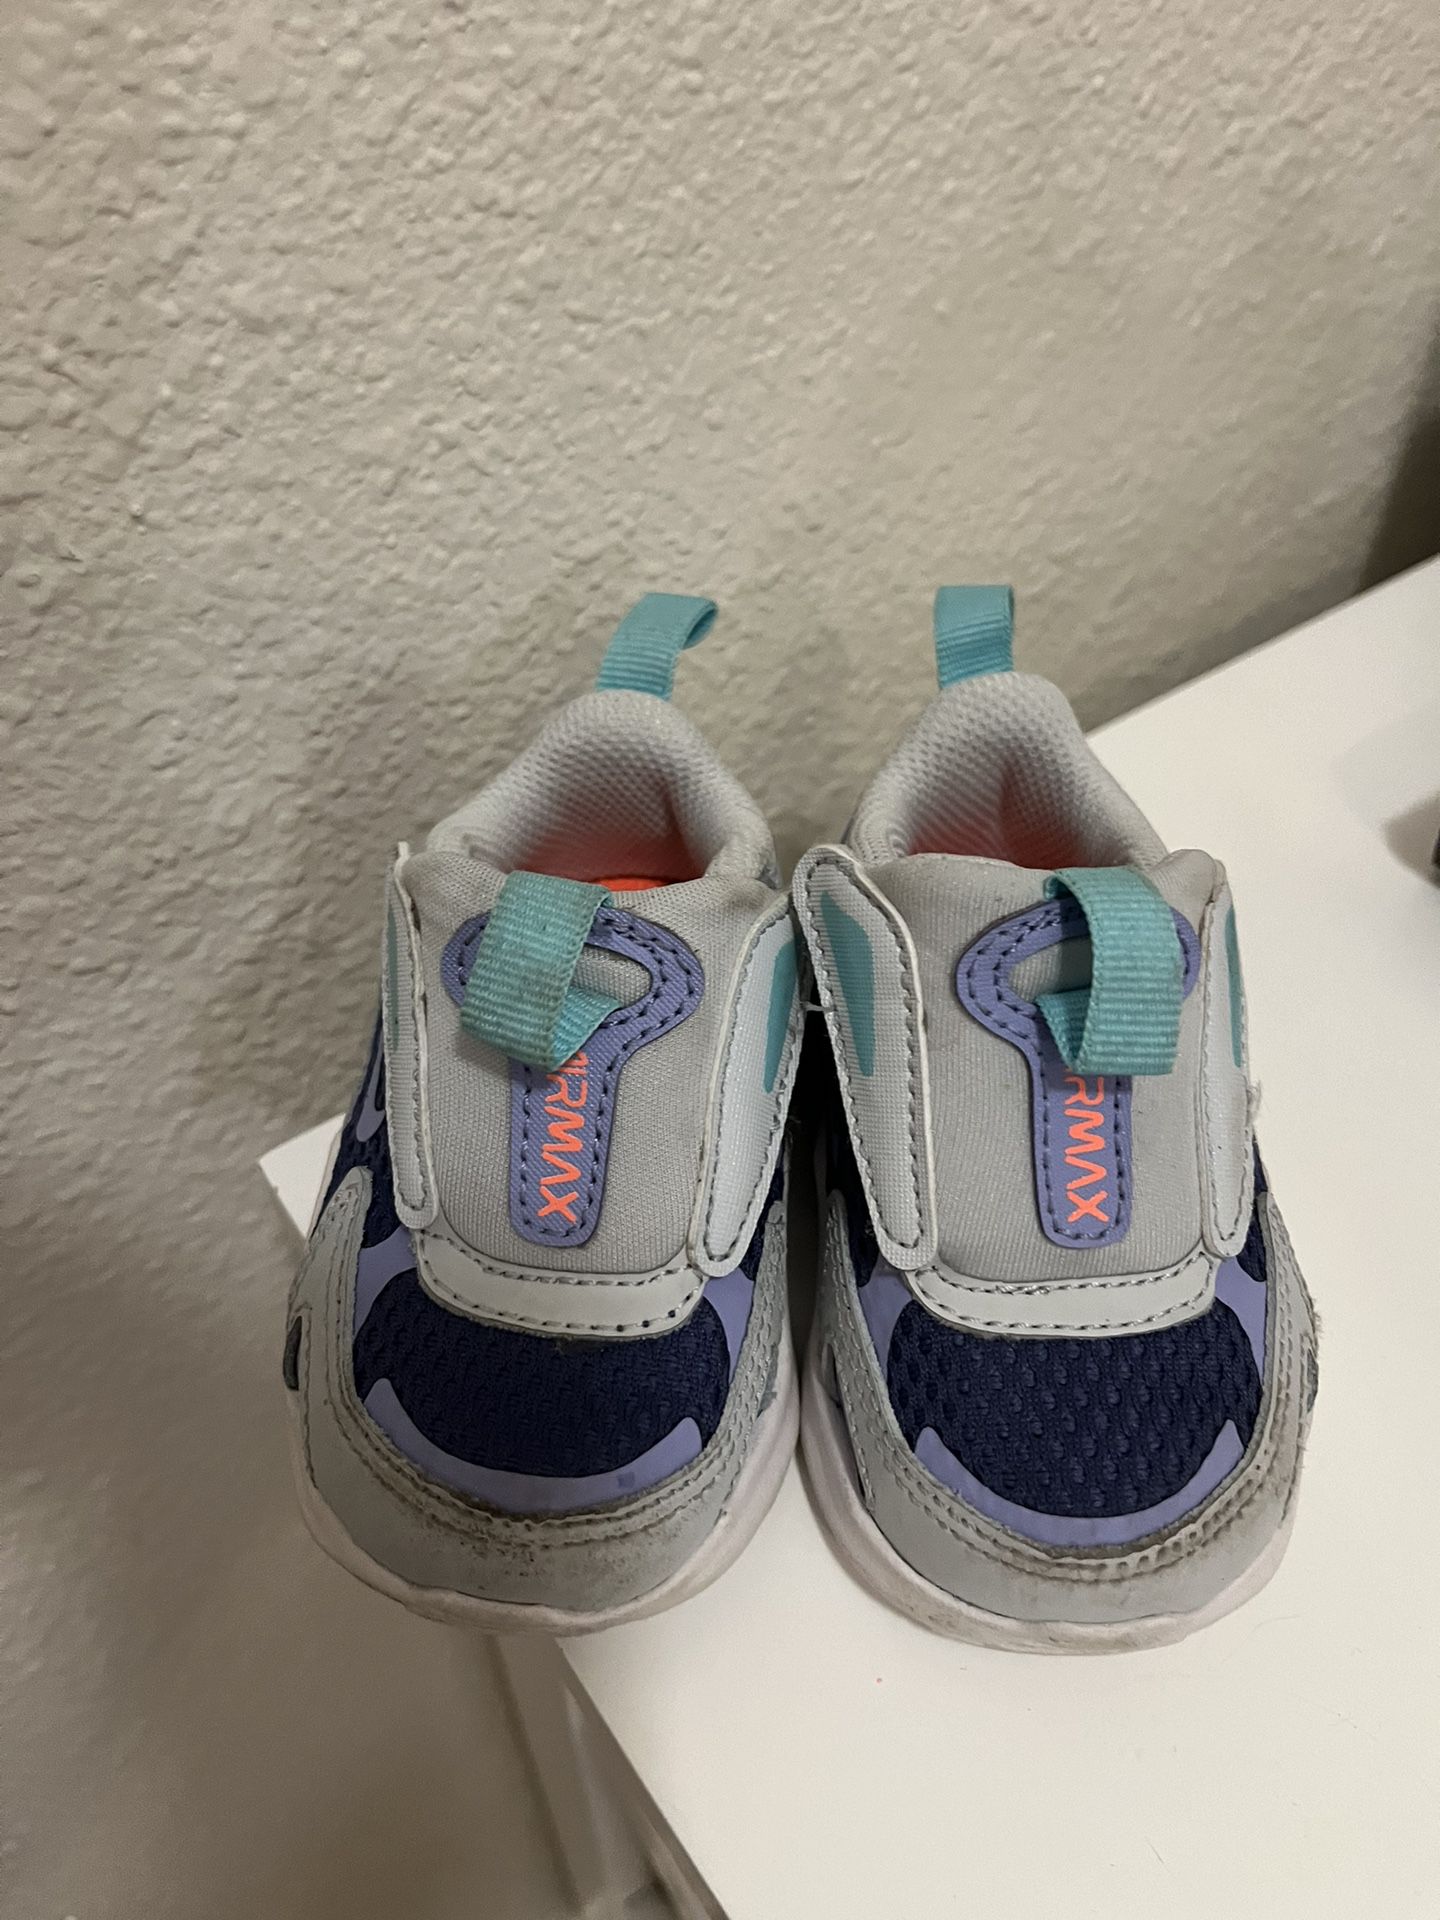 Toddler Nikes